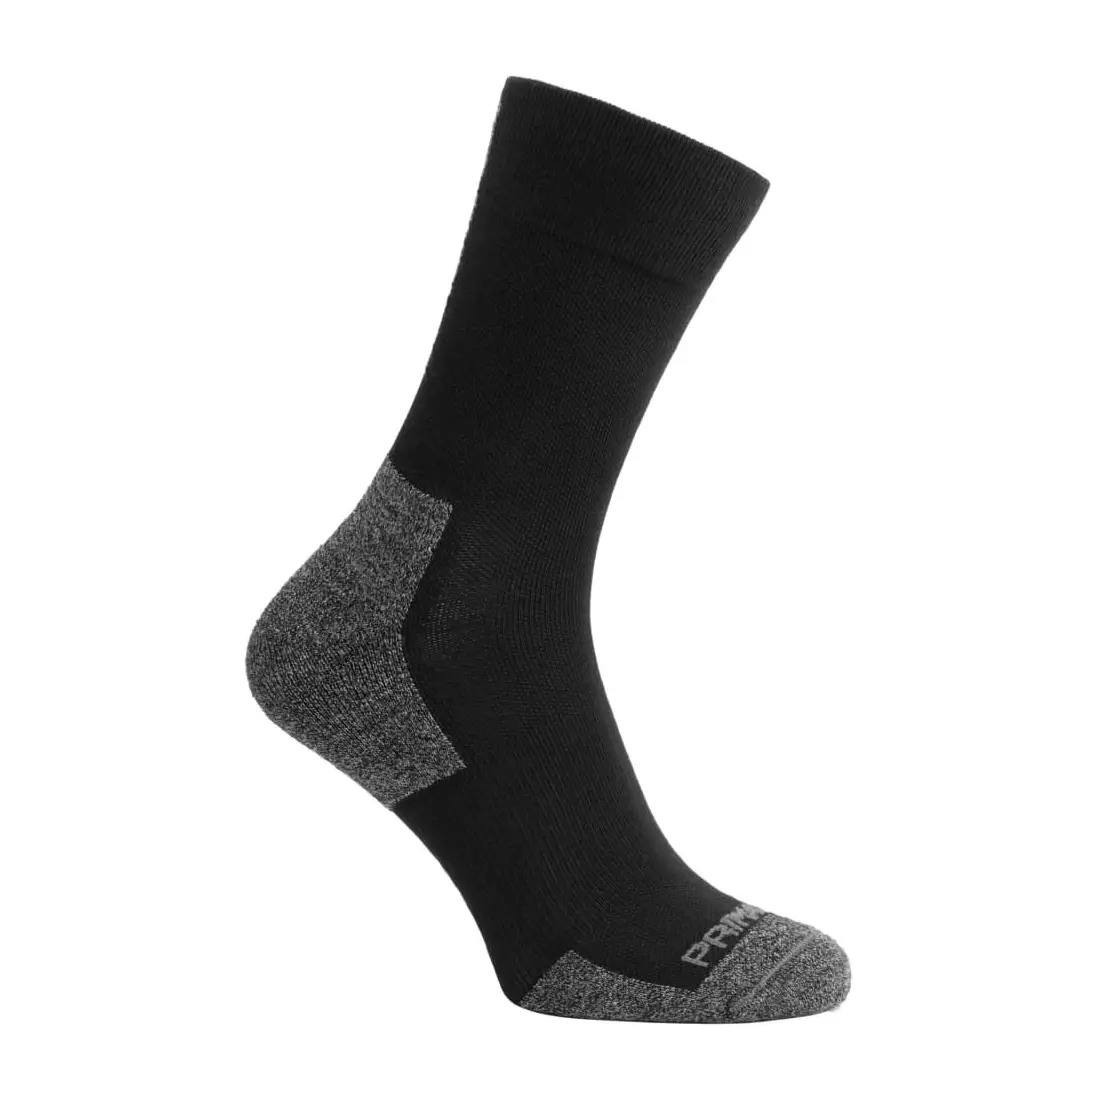 Rogelli PRIMALOFT winter cycling/sports socks, black